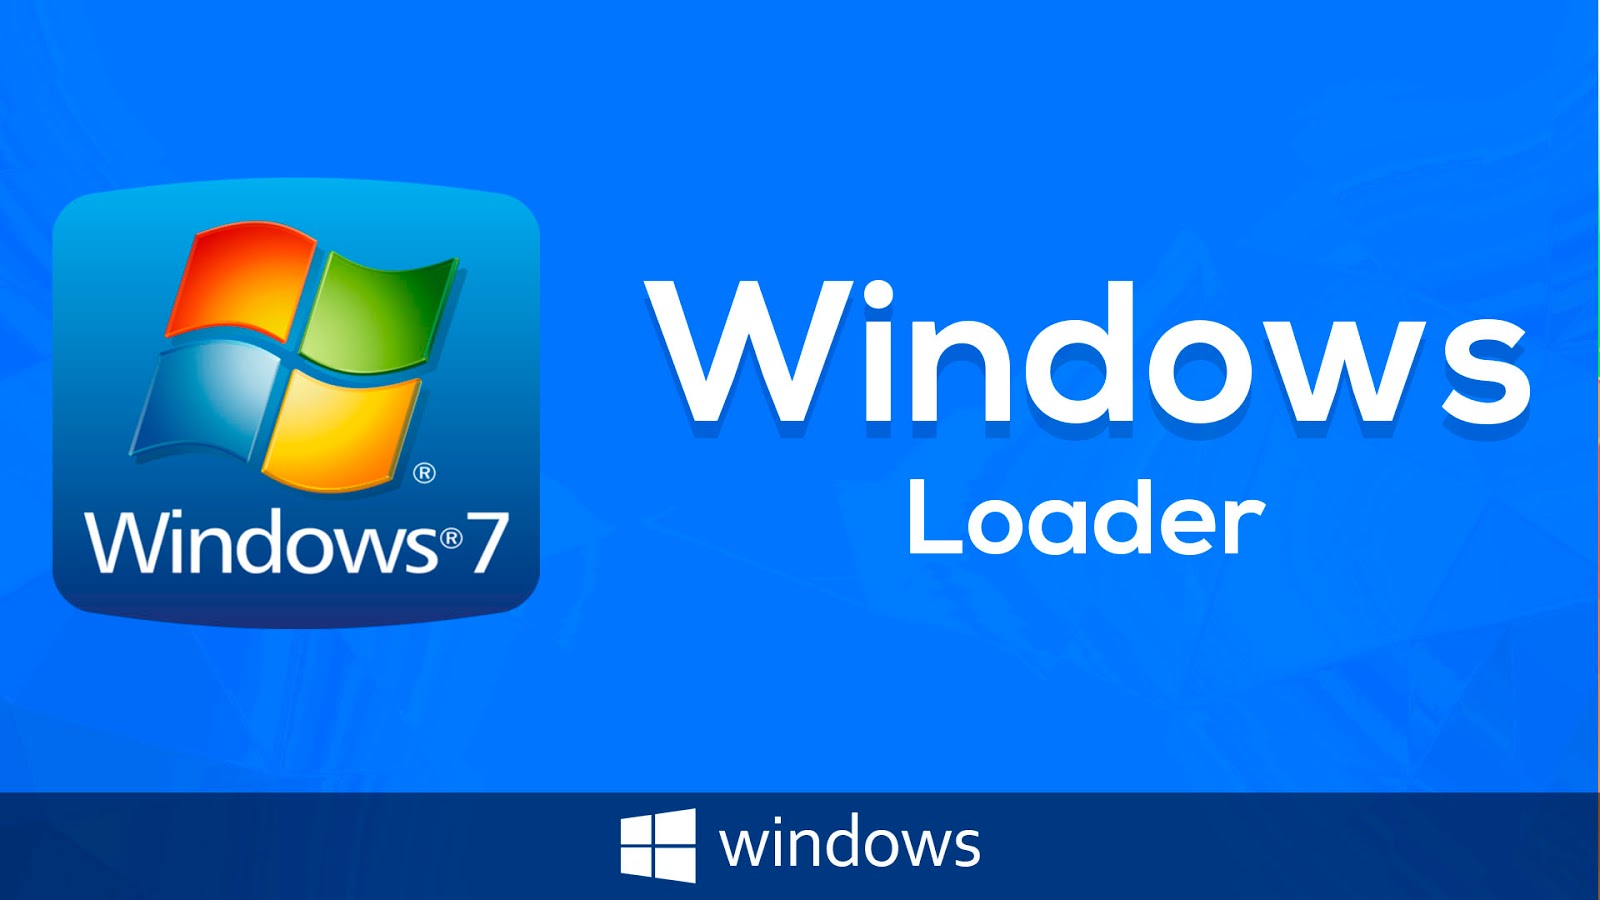 Windows 7 Loader Zip File